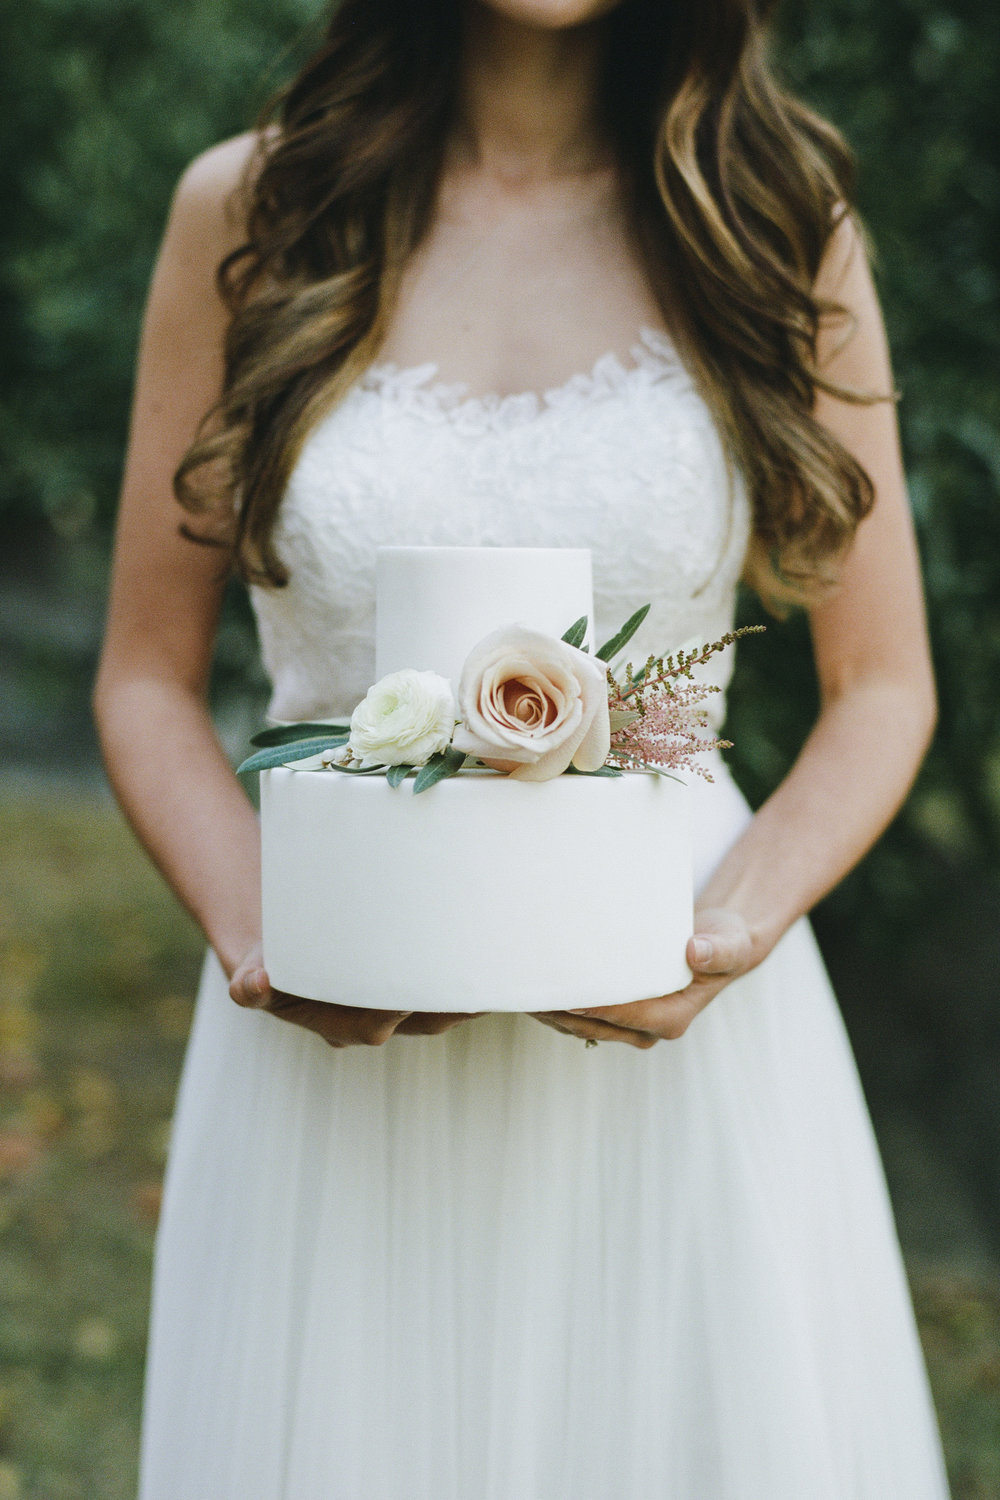 Violette-fleurs-roseville-sacramento-california-Flower-farm-inn-wedding-florist-spring-cake-inspo-simple-elegant.jpg